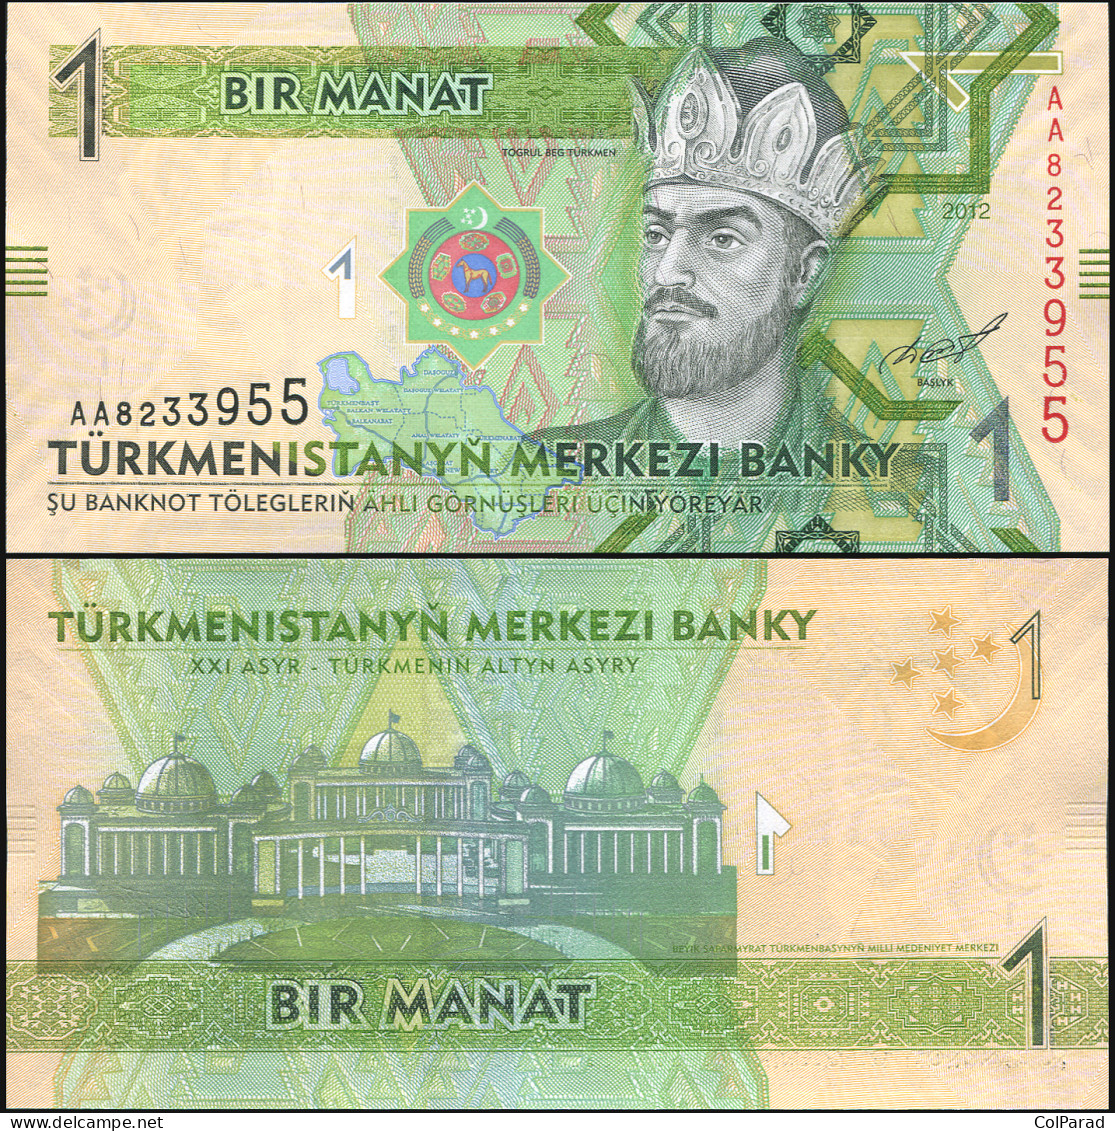 TURKMENISTAN 1 MANAT - 2012 - Unc - P.29a Paper Banknote - Turkmenistan